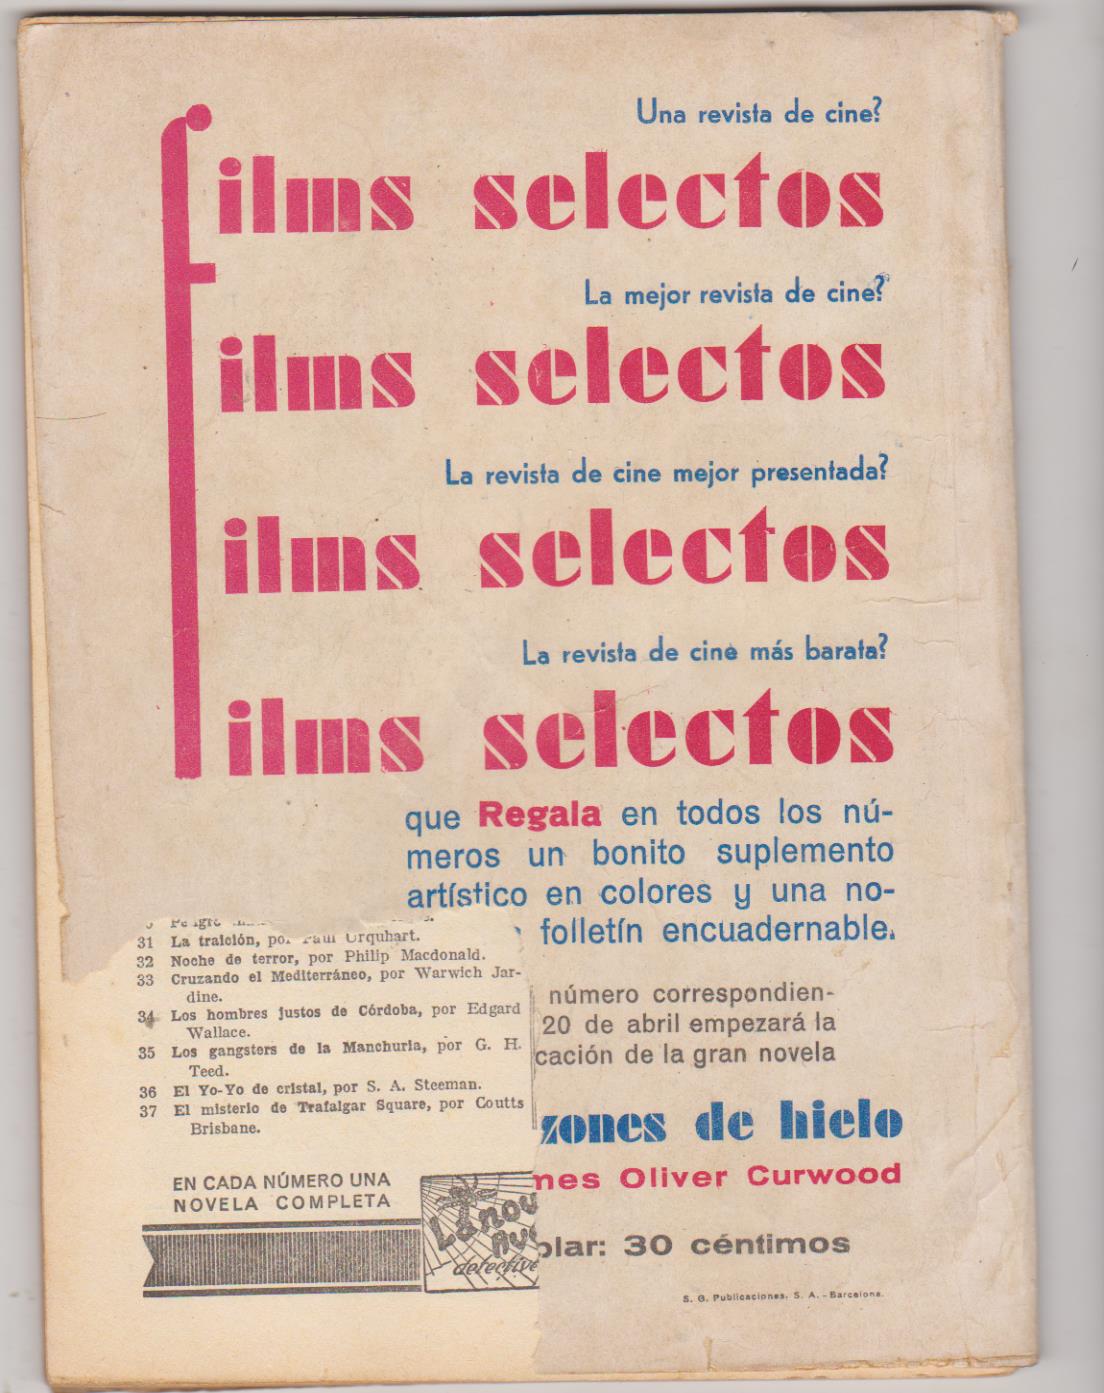 La Novela Aventura nº 74. La Cuenta final por Sapper. Año 1935